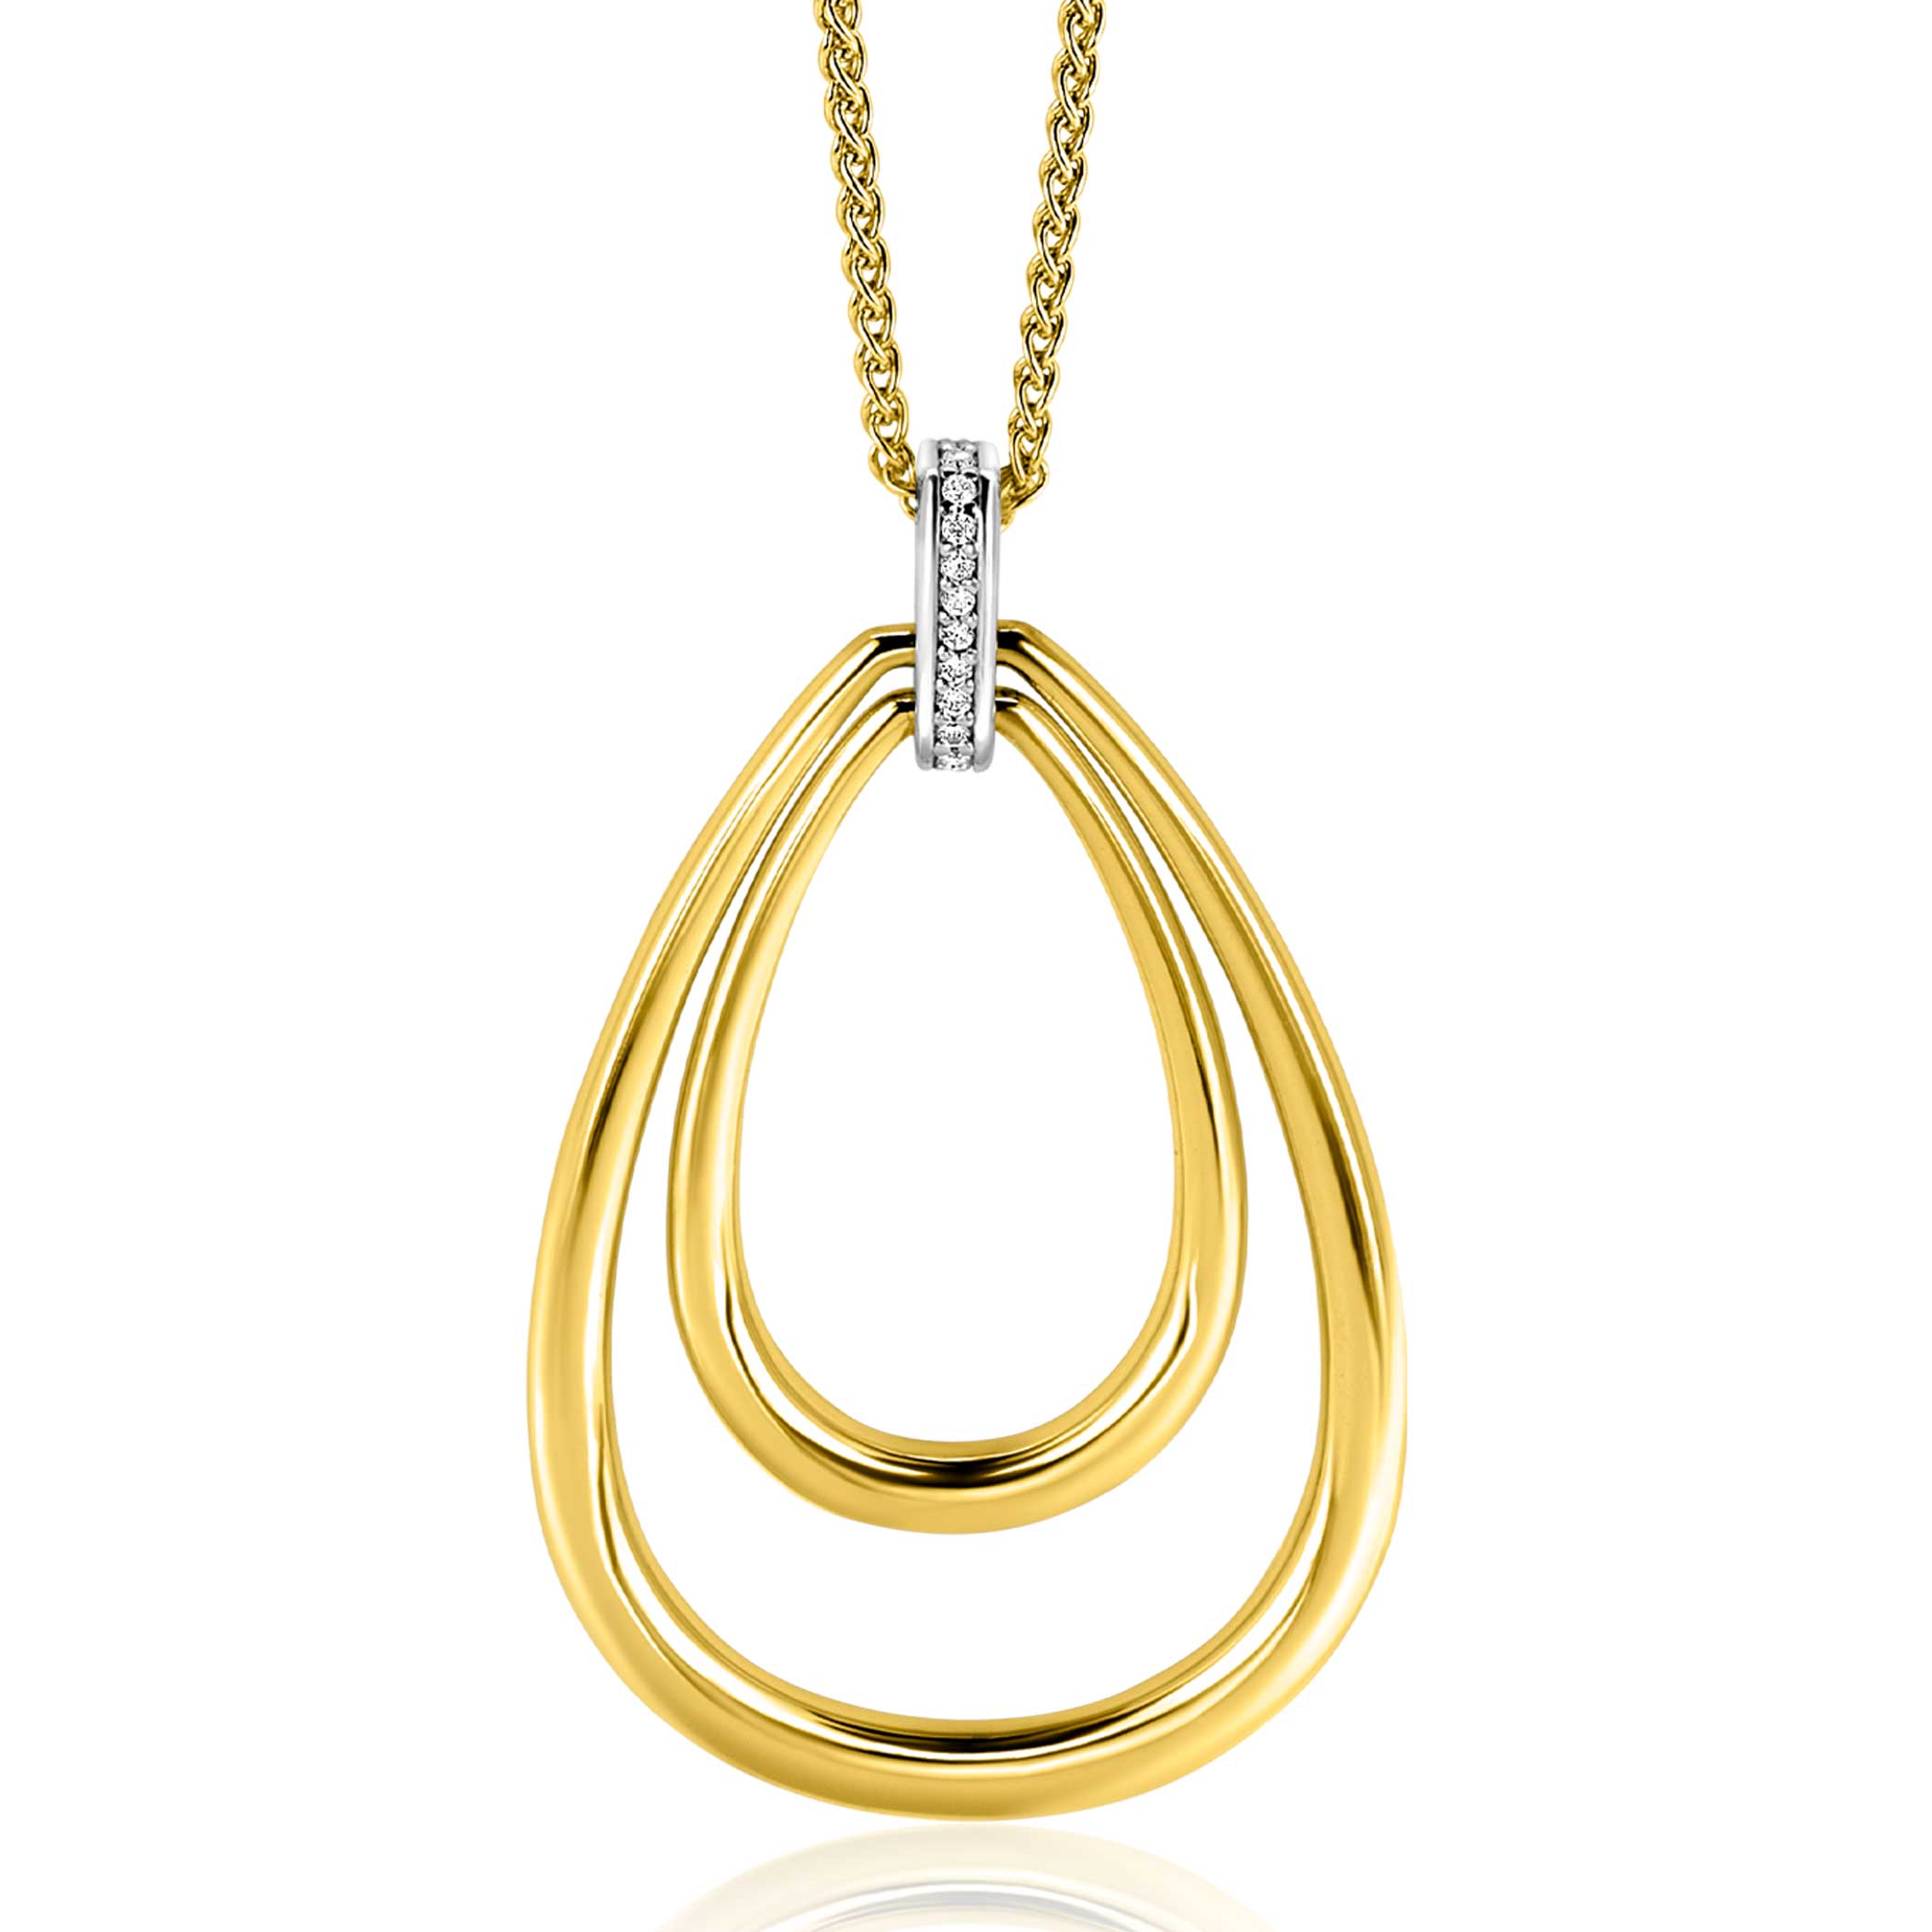 70cm ZINZI gold plated zilveren ketting met luxe ovale hanger 45mm, valt lang om de hals ZIC2489Y